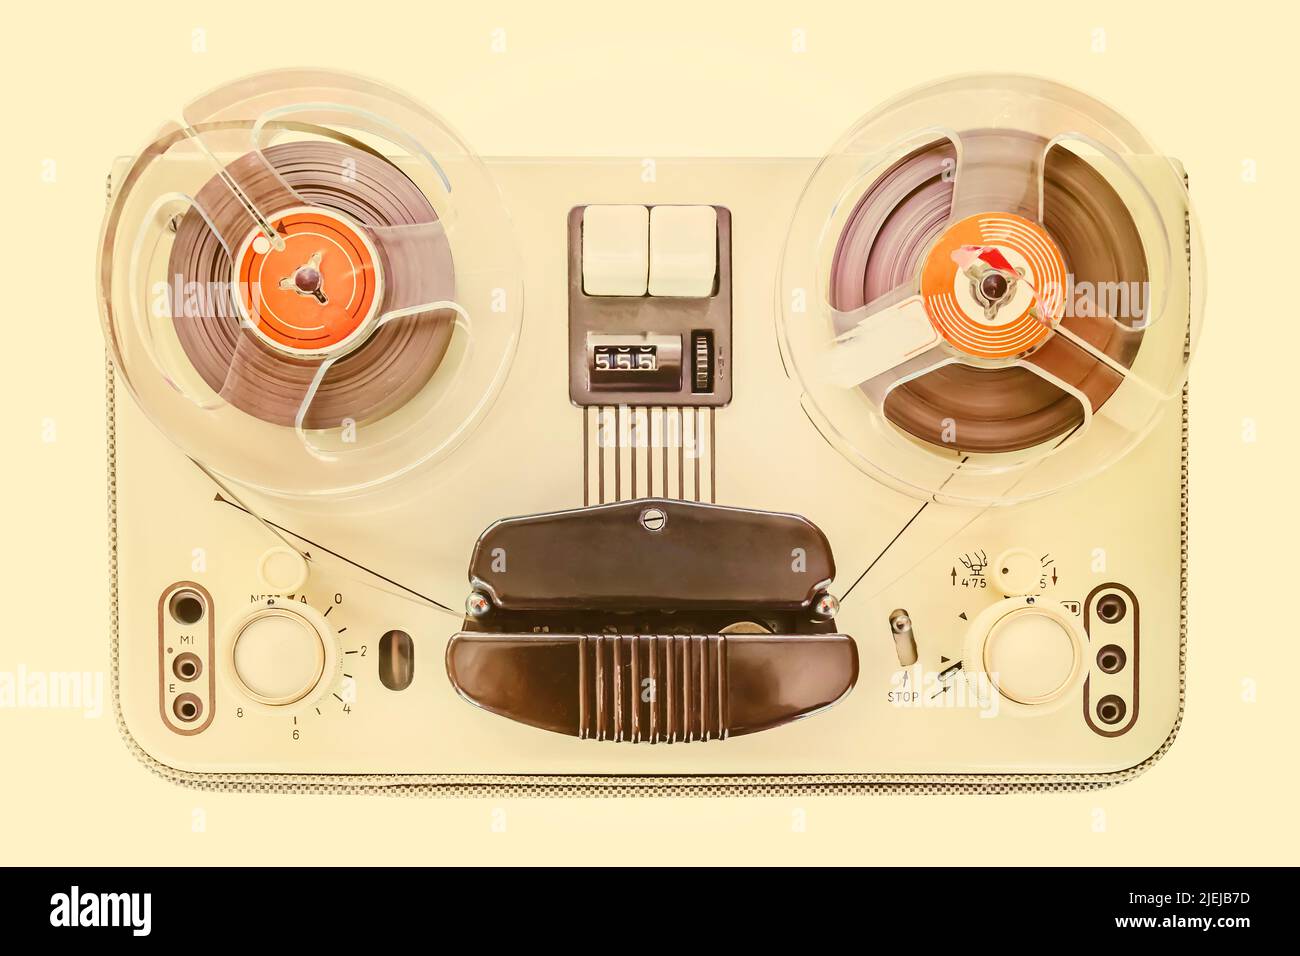 Imagen sepia de estilo retro de una grabadora de cinta clásica de los años 60 Foto de stock